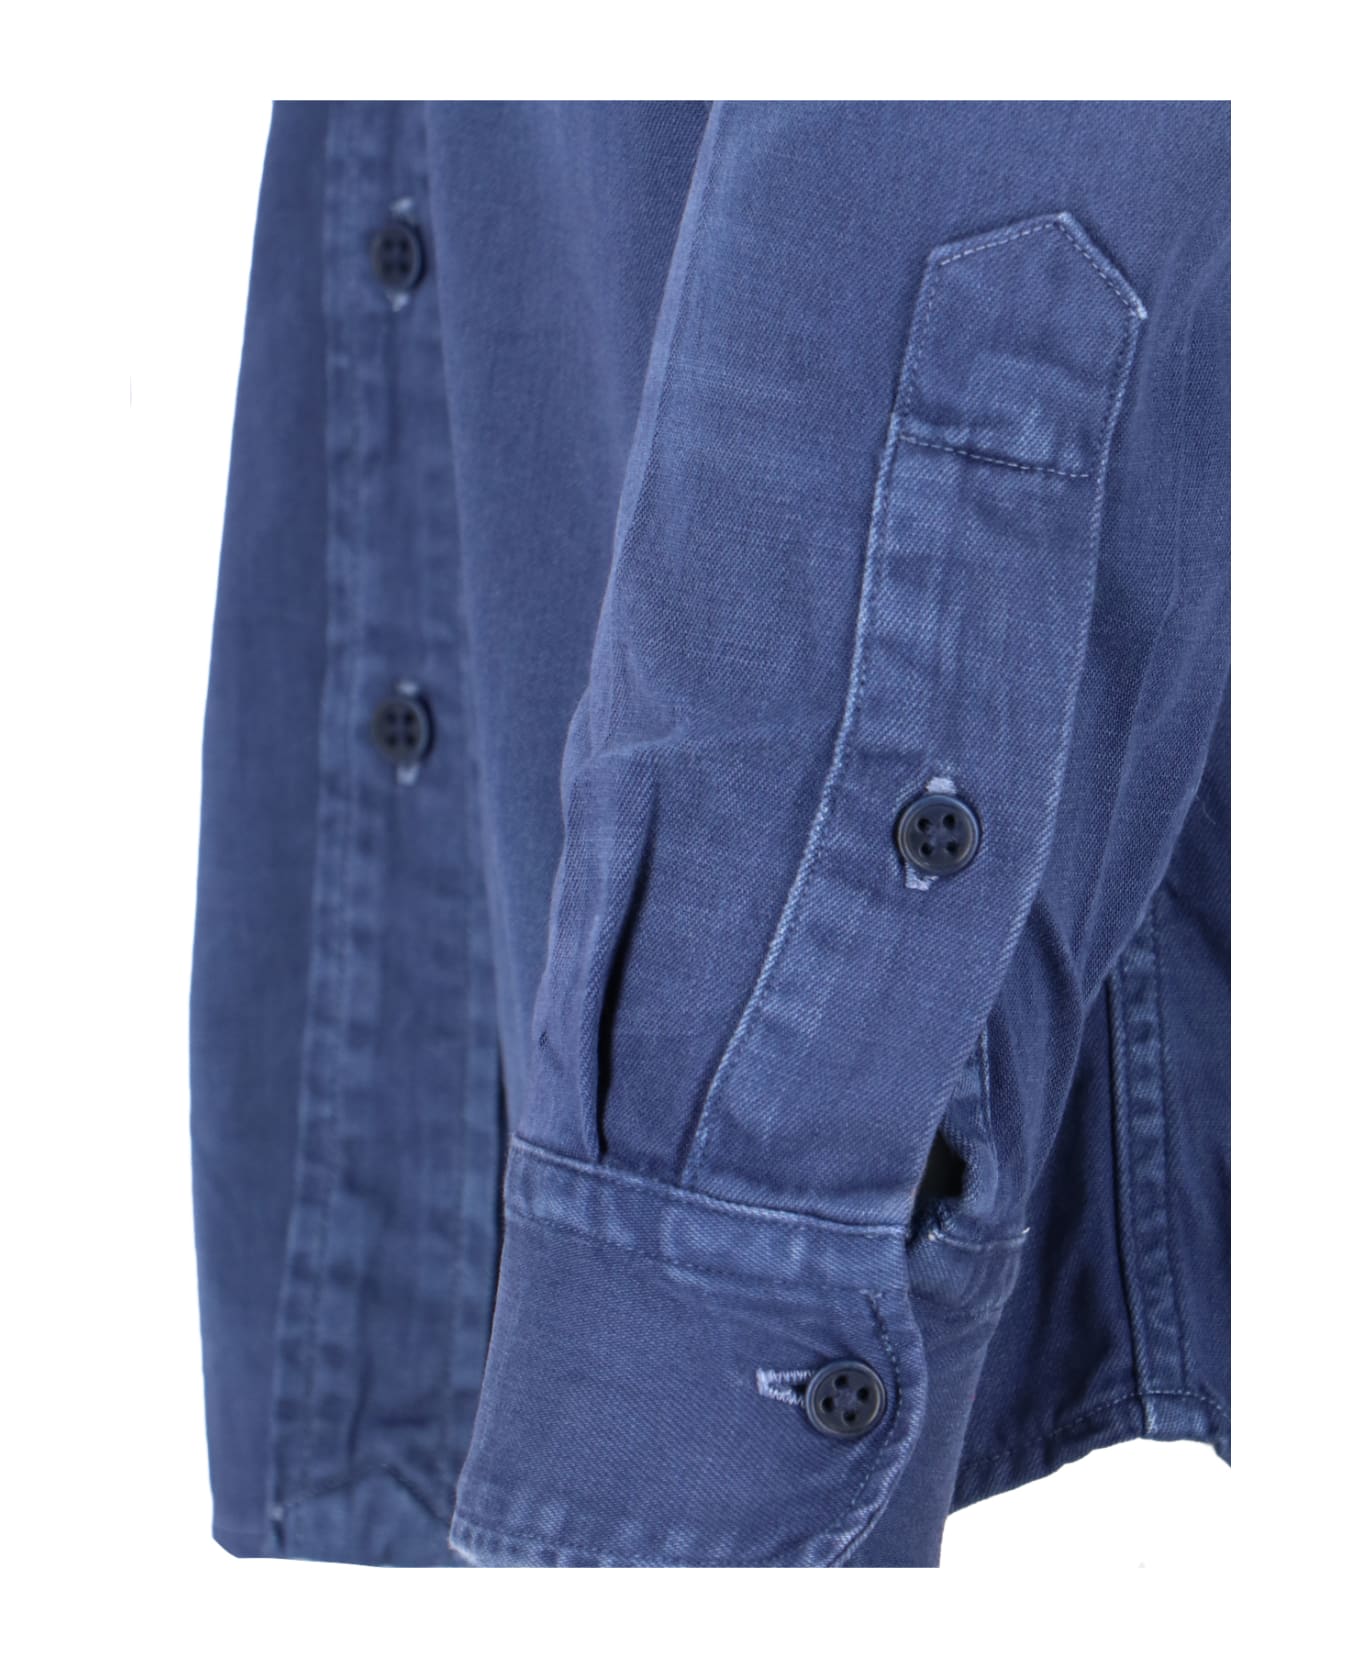 Polo Ralph Lauren Denim Shirt - Blue